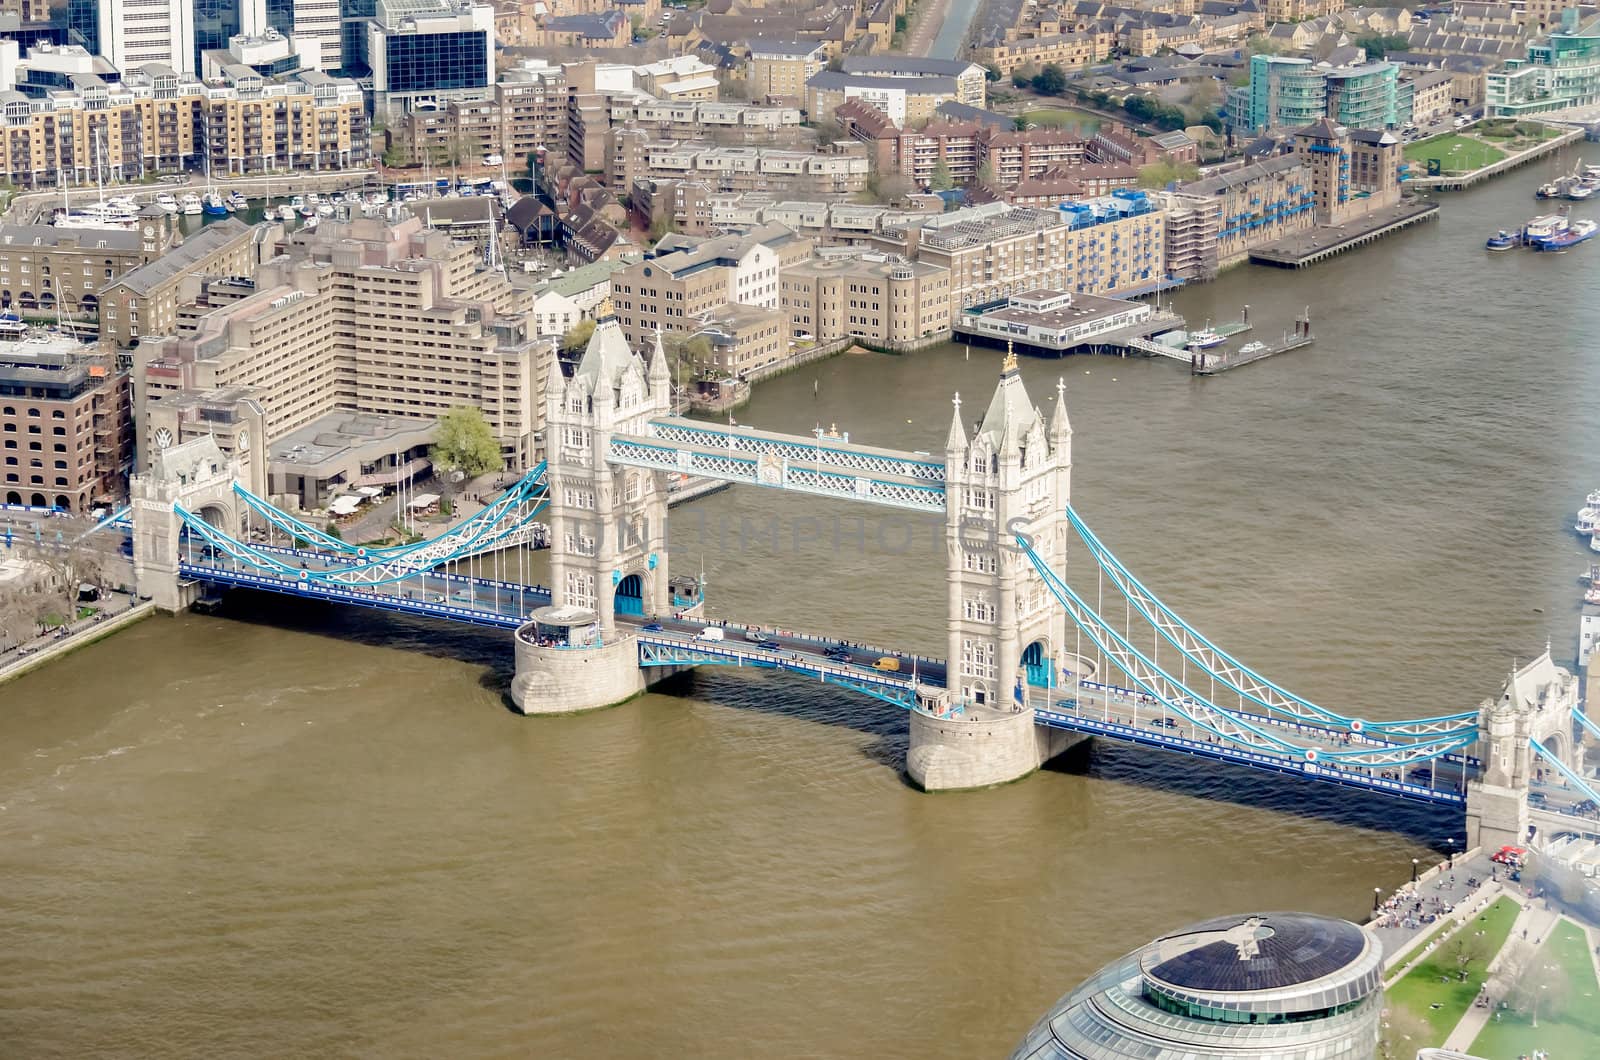 Tower Bridge, London, UK by marcorubino